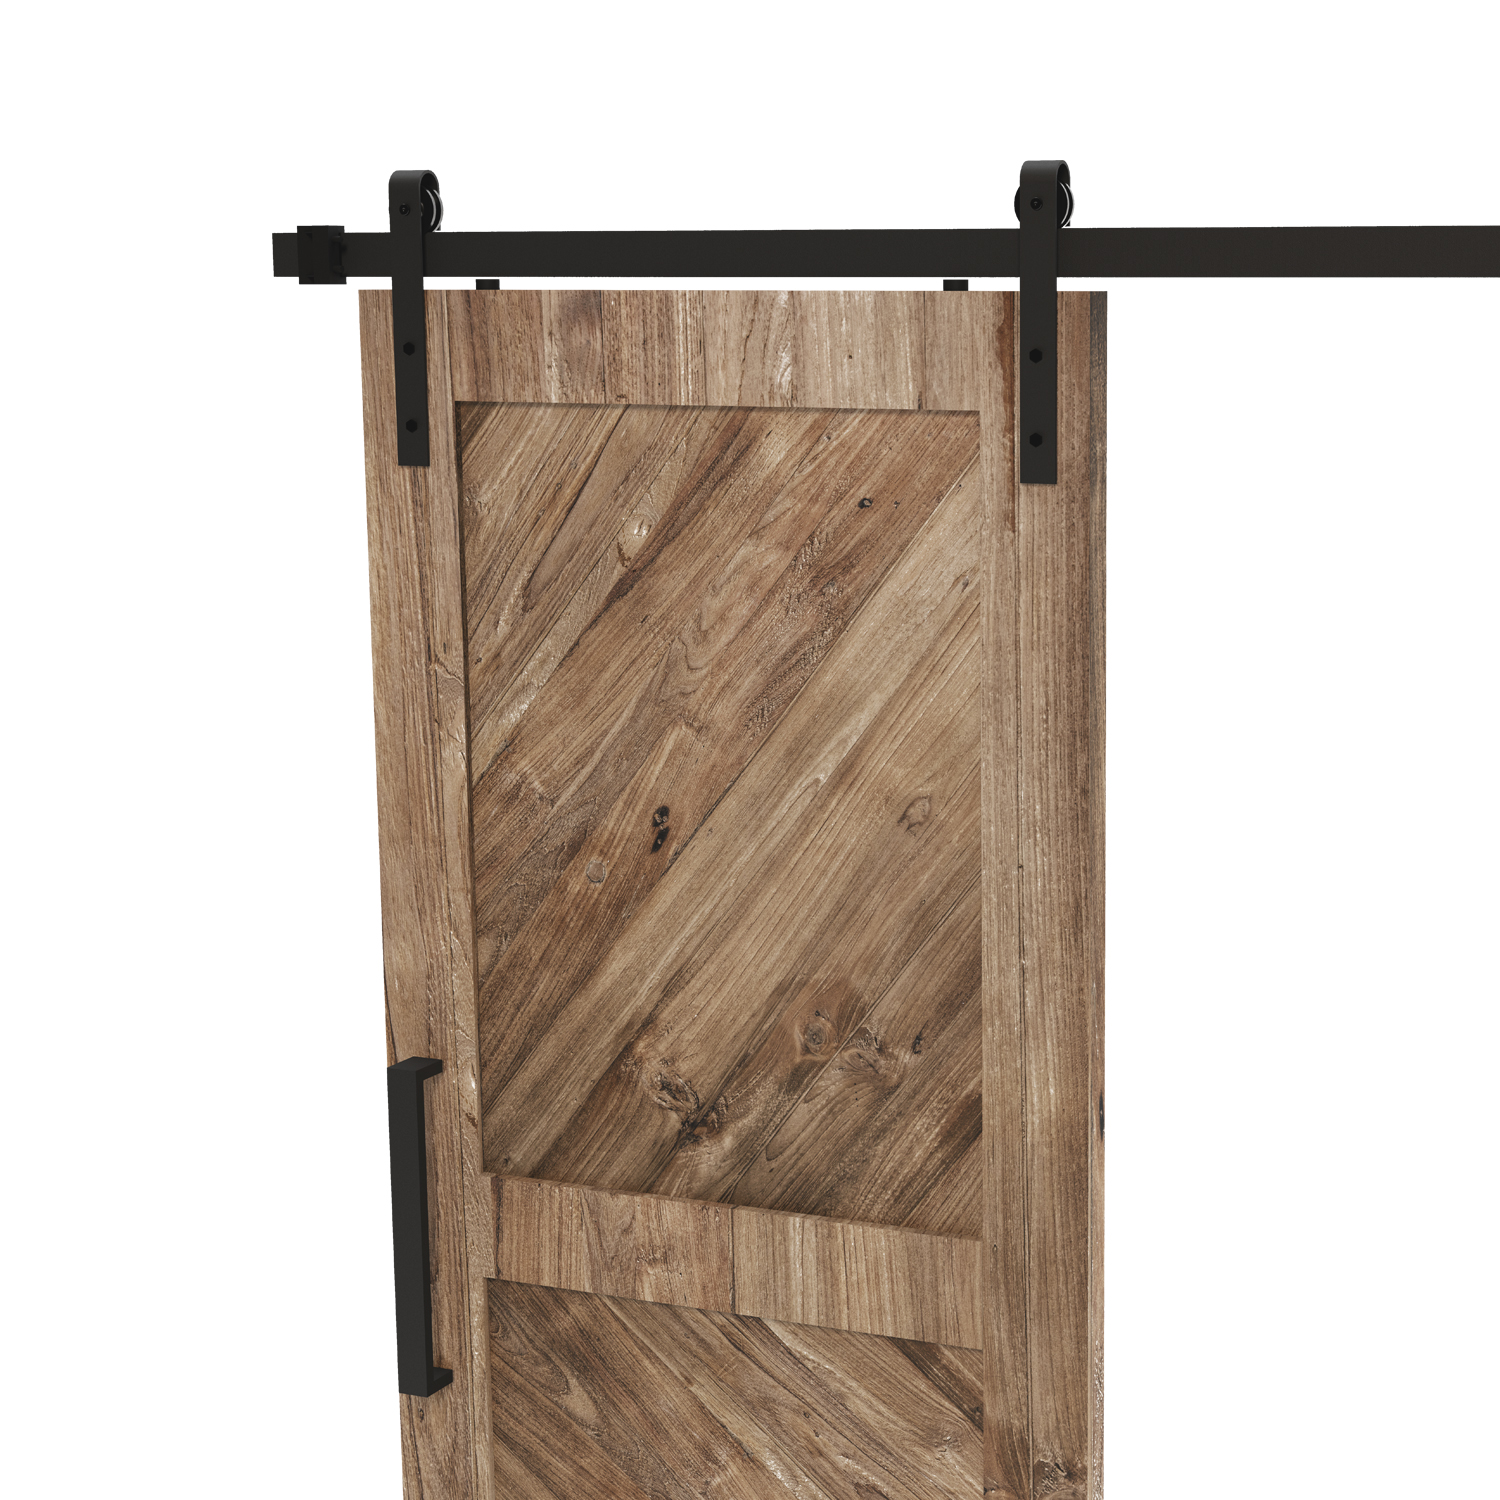  Kit de puerta de granero de 5 pies a 10 pies de acero  inoxidable deslizante simple puerta de granero de madera de granero Kit de  rodillos para puertas correderas (color 